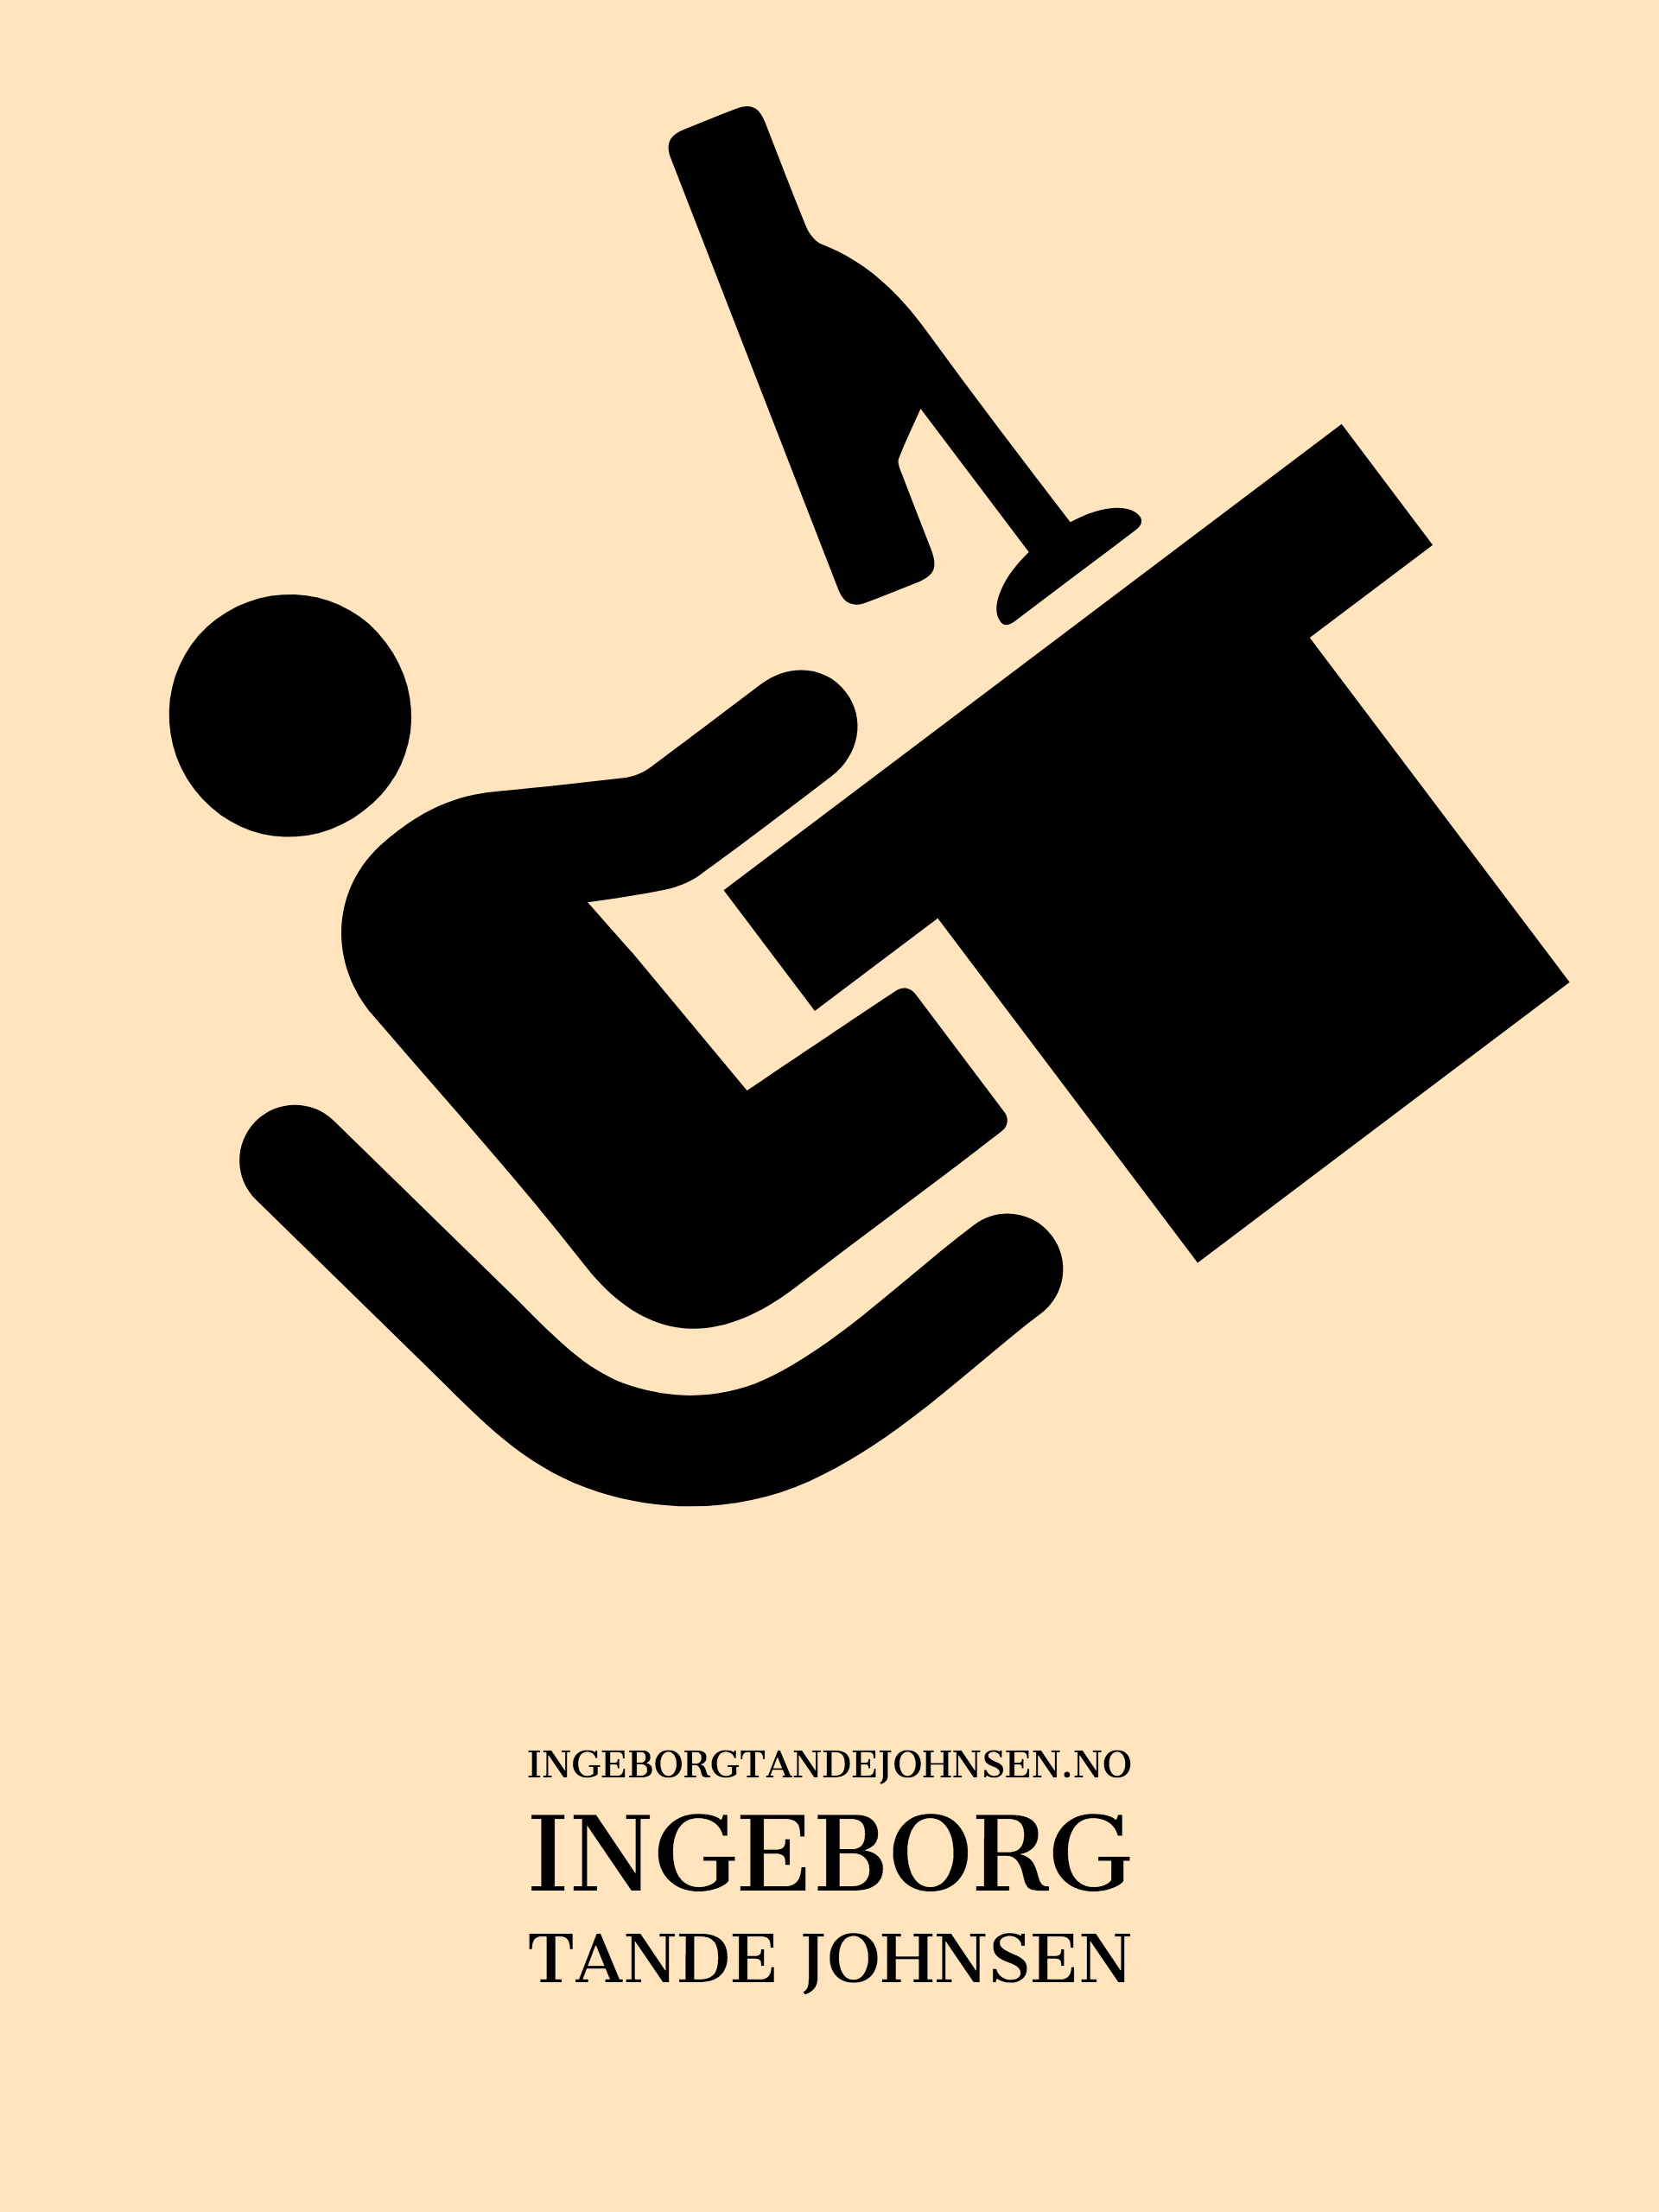 Ingeborg brand